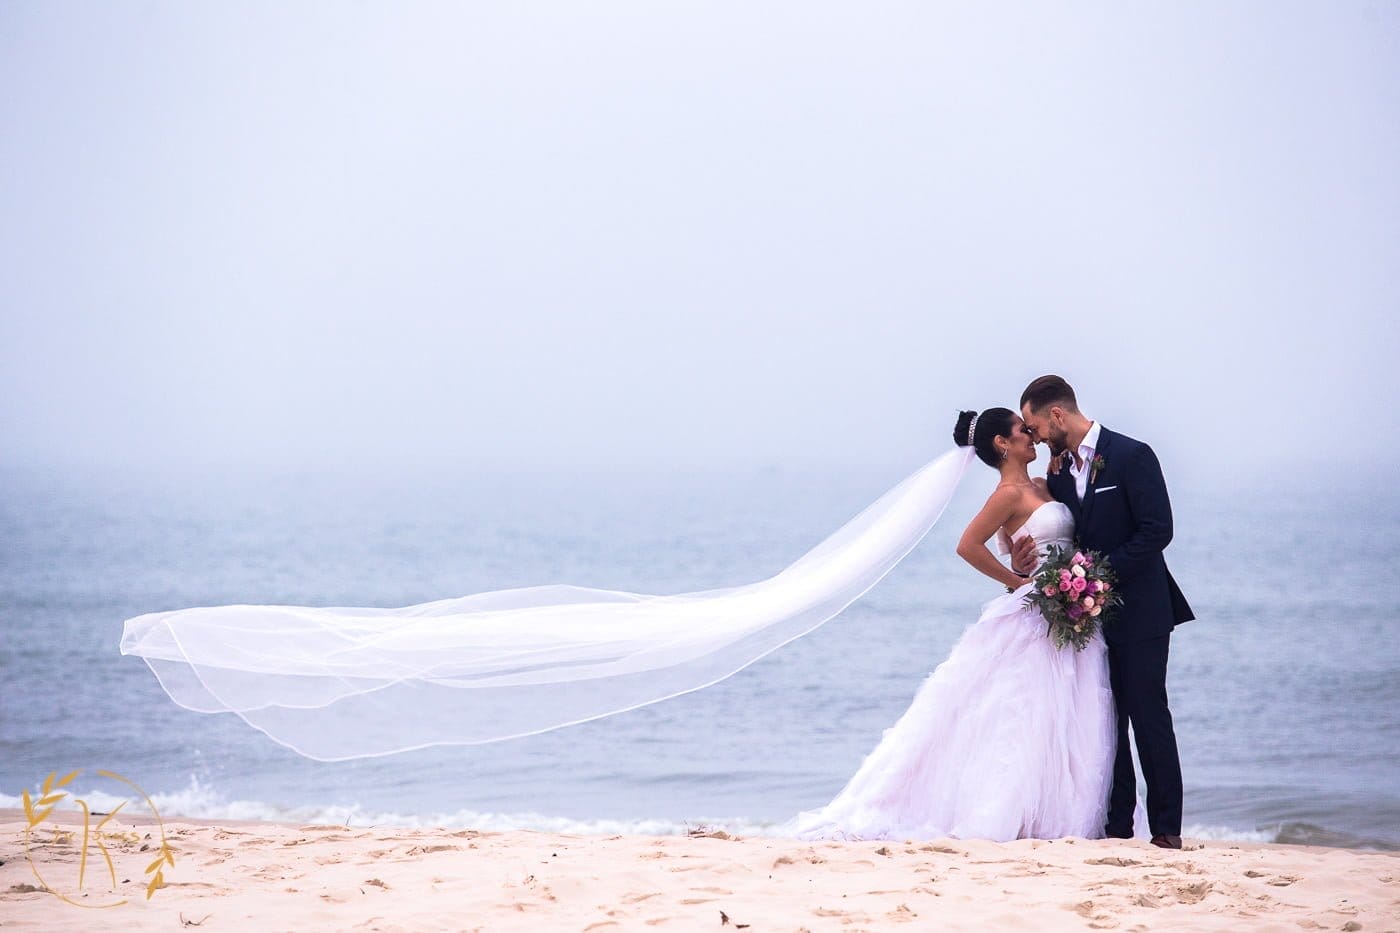 Ensaio fotográfico dos noivos na praia